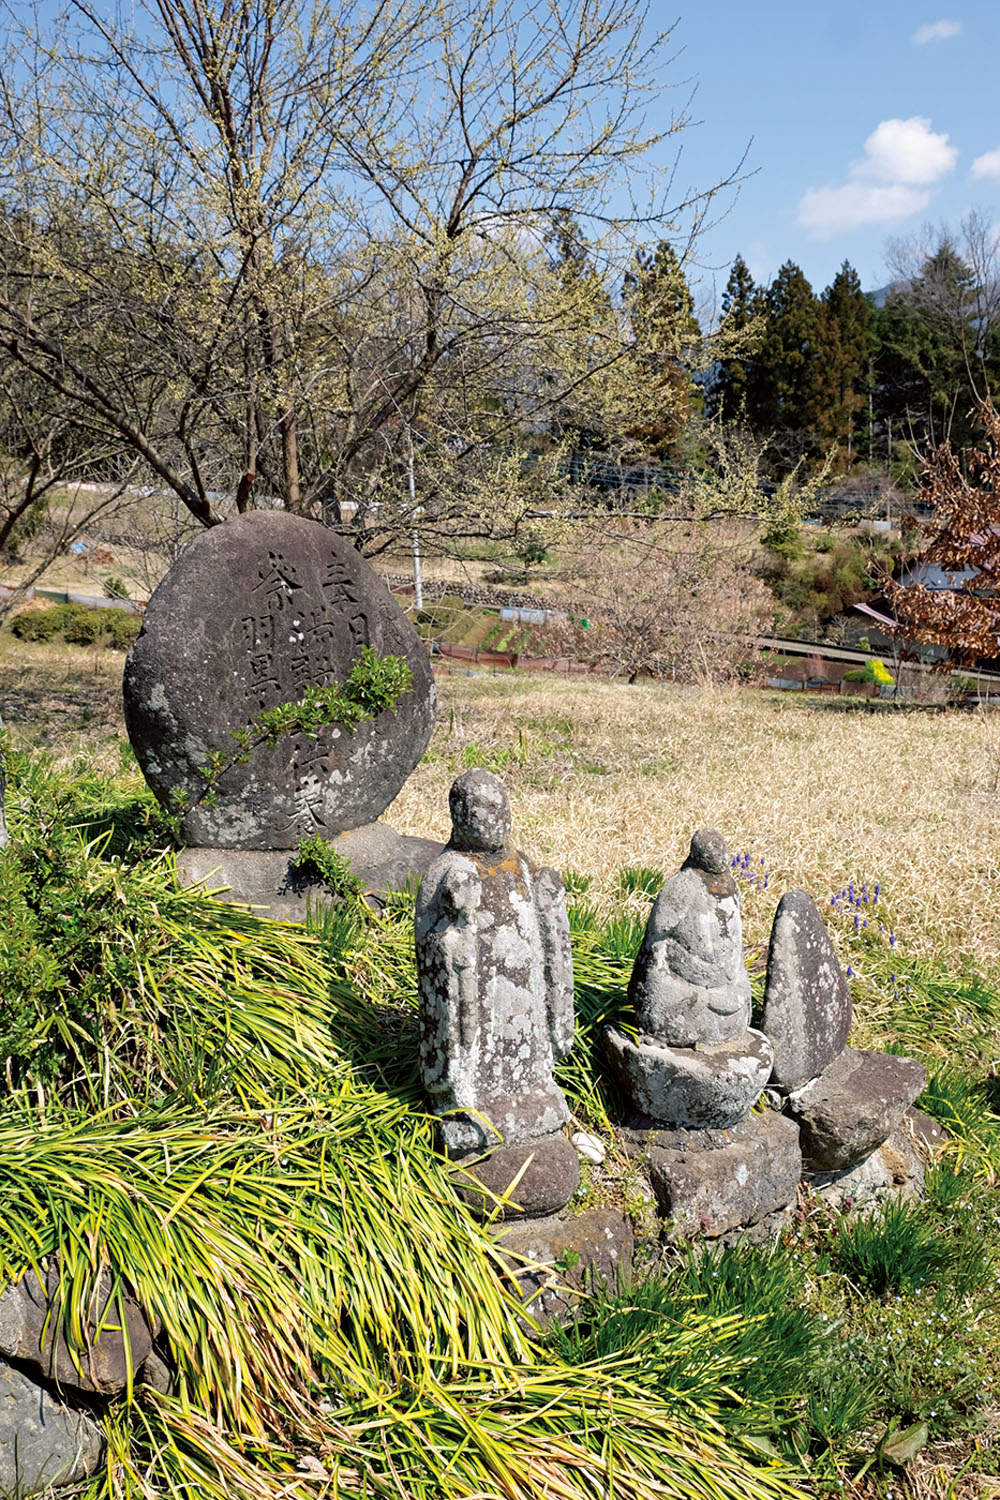 小倉集落の道端に出羽三山の石碑と顔が風化した石仏が佇んでいた。